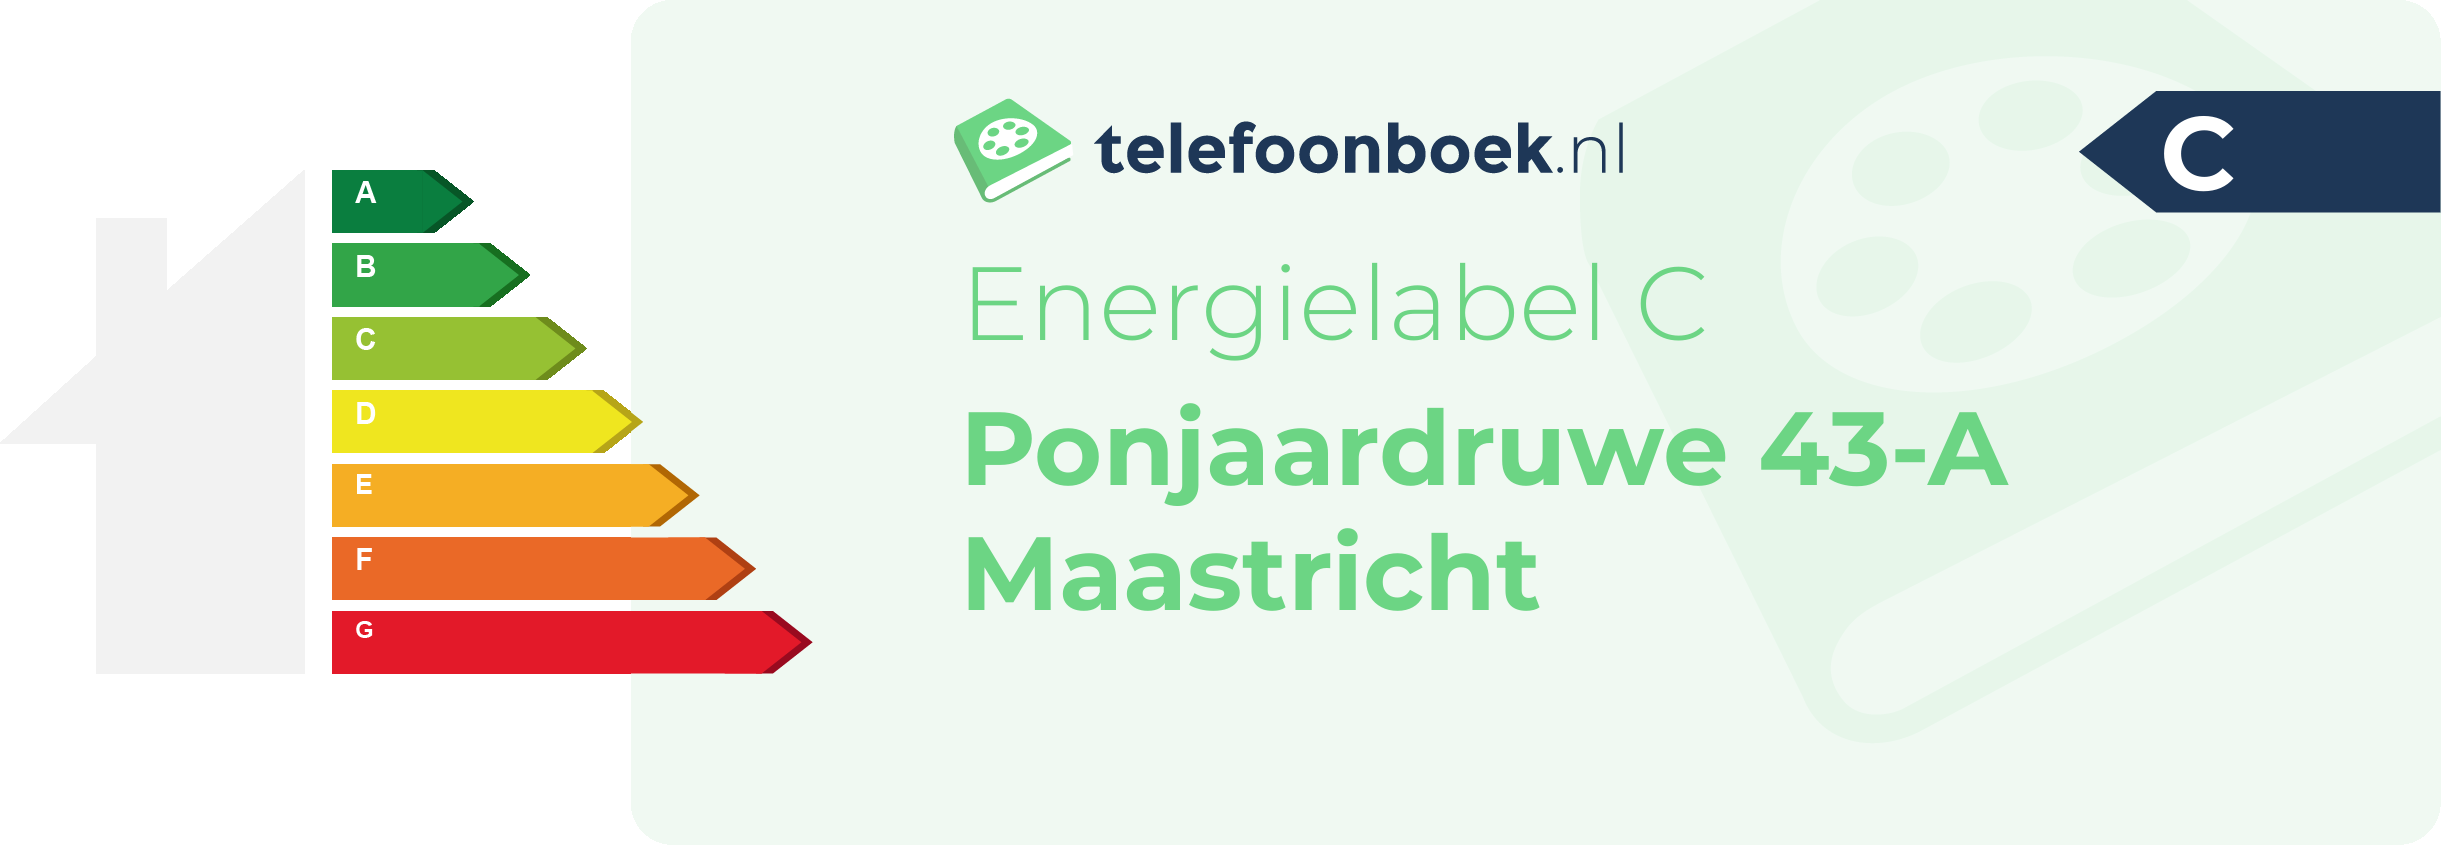 Energielabel Ponjaardruwe 43-A Maastricht